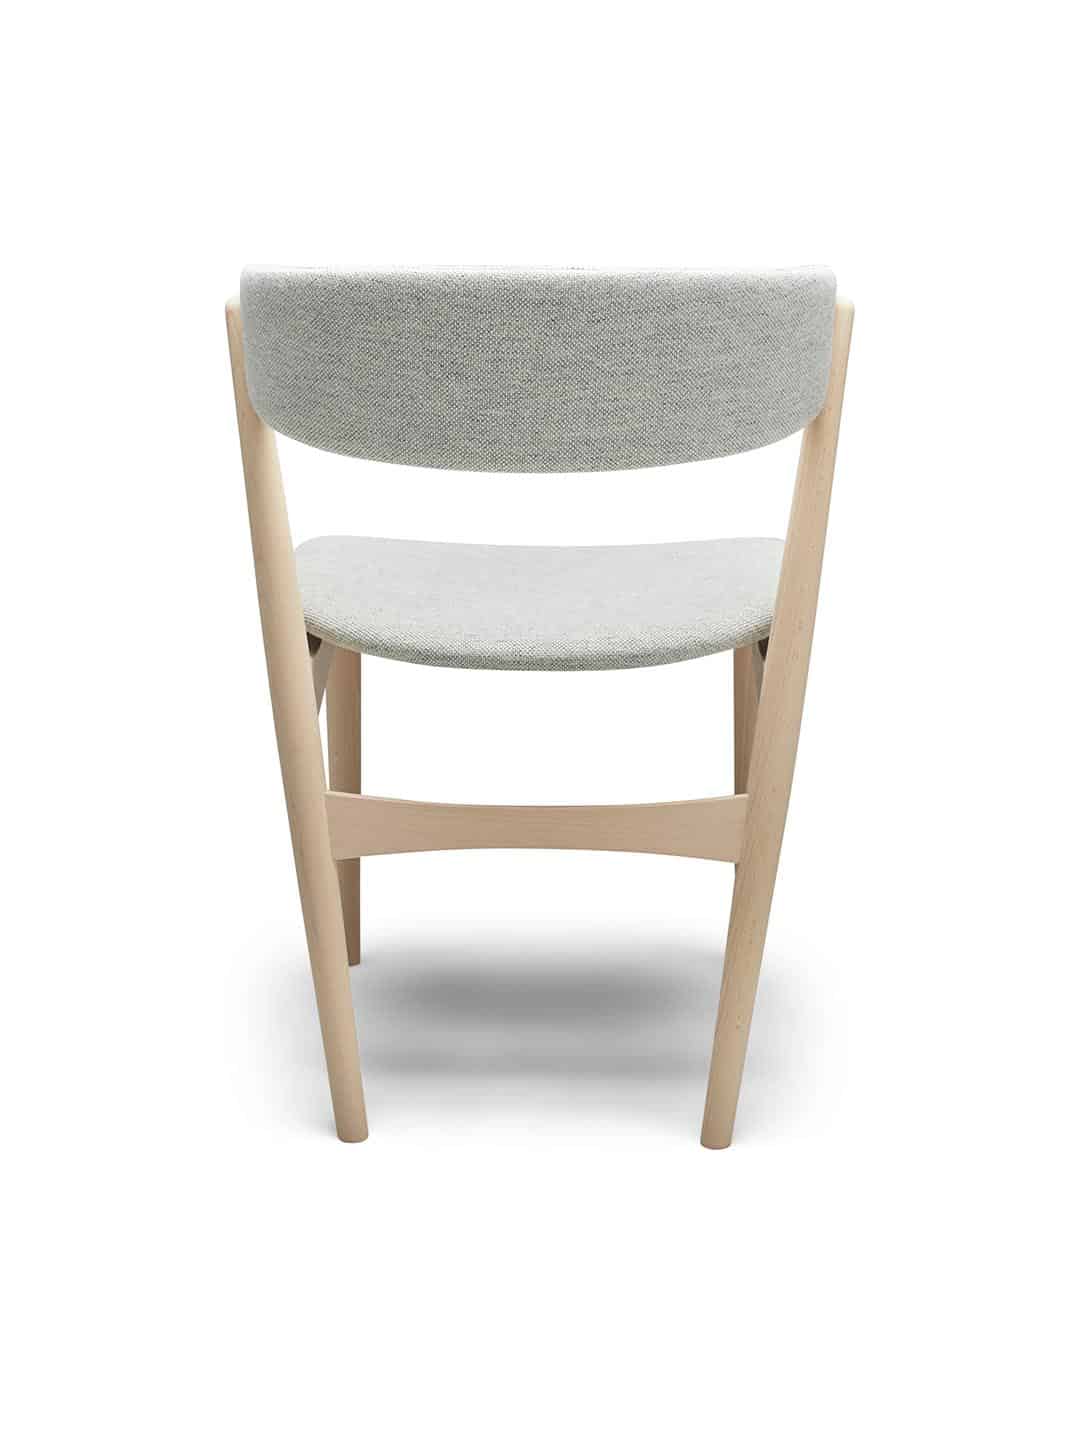 Скандинавский обеденный стул Sibast №7 с обивкой из белой шерсти